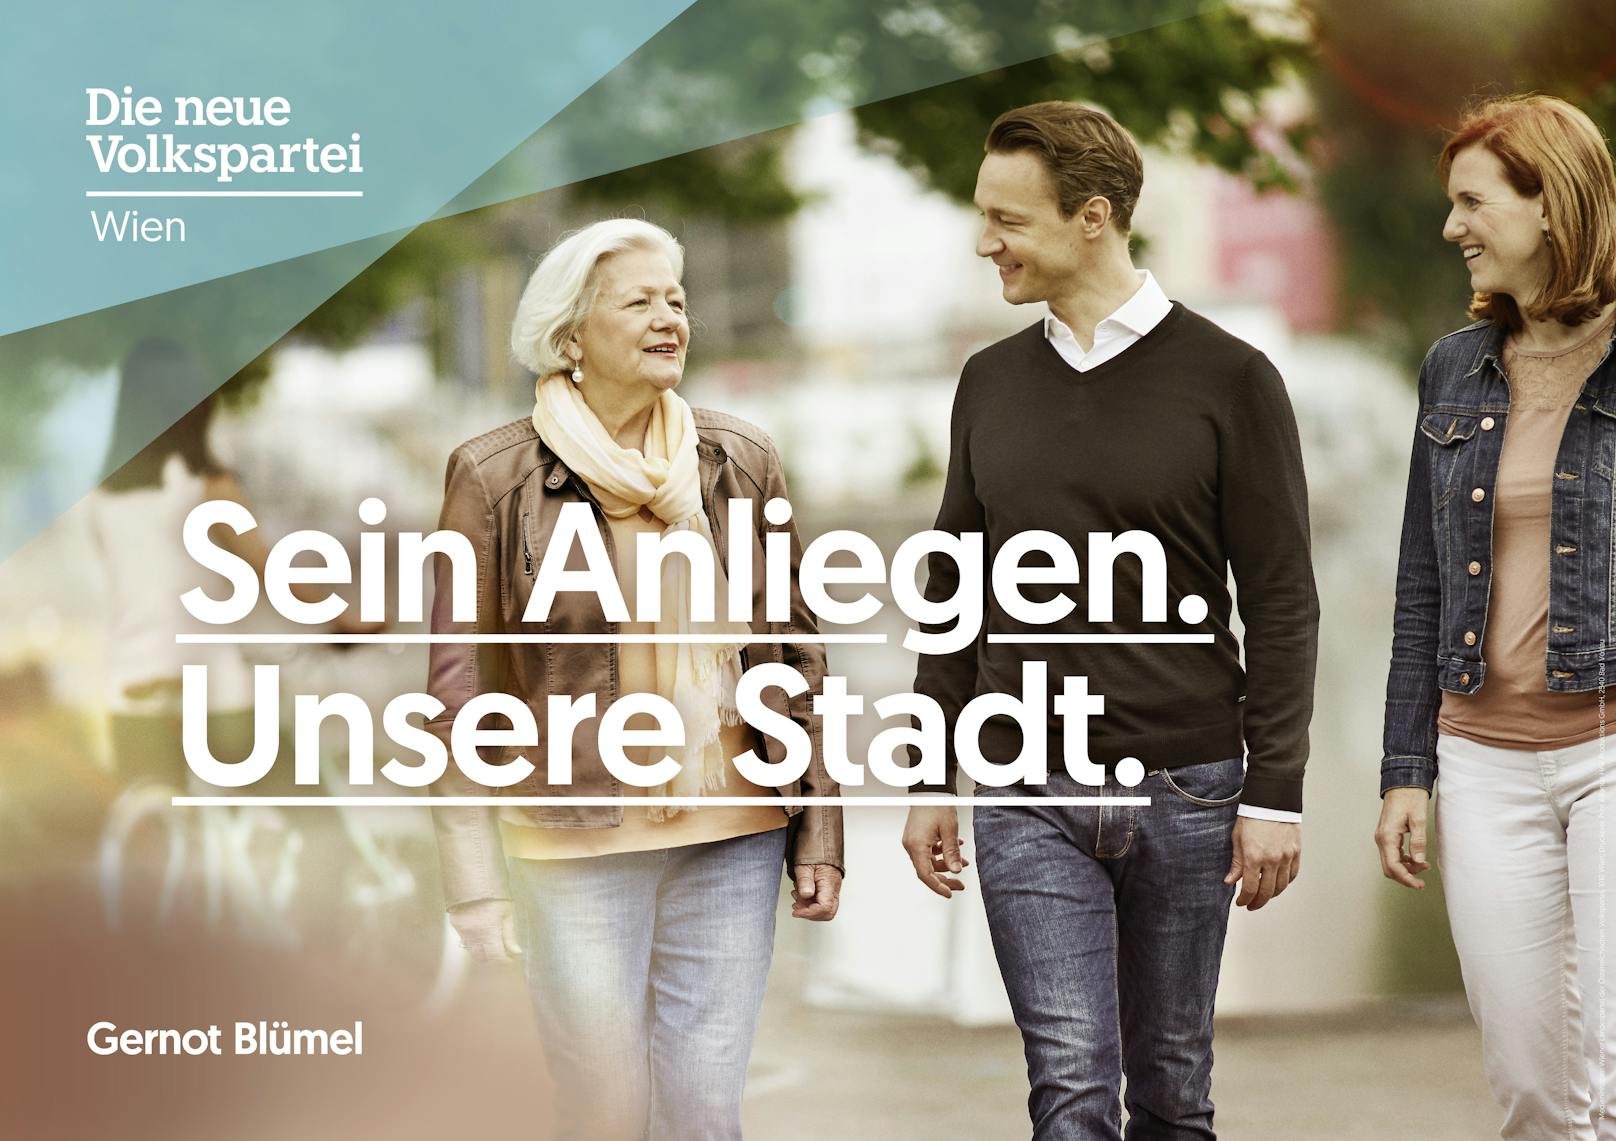 In ihrer Sommerkampagne lädt die ÖVP Wien ein, mit Spitzenkandidat Gernot Blümel in Dialog zu treten. "Echte Bürgerbeteiligung ist uns wichtig", erklärt Landesparti